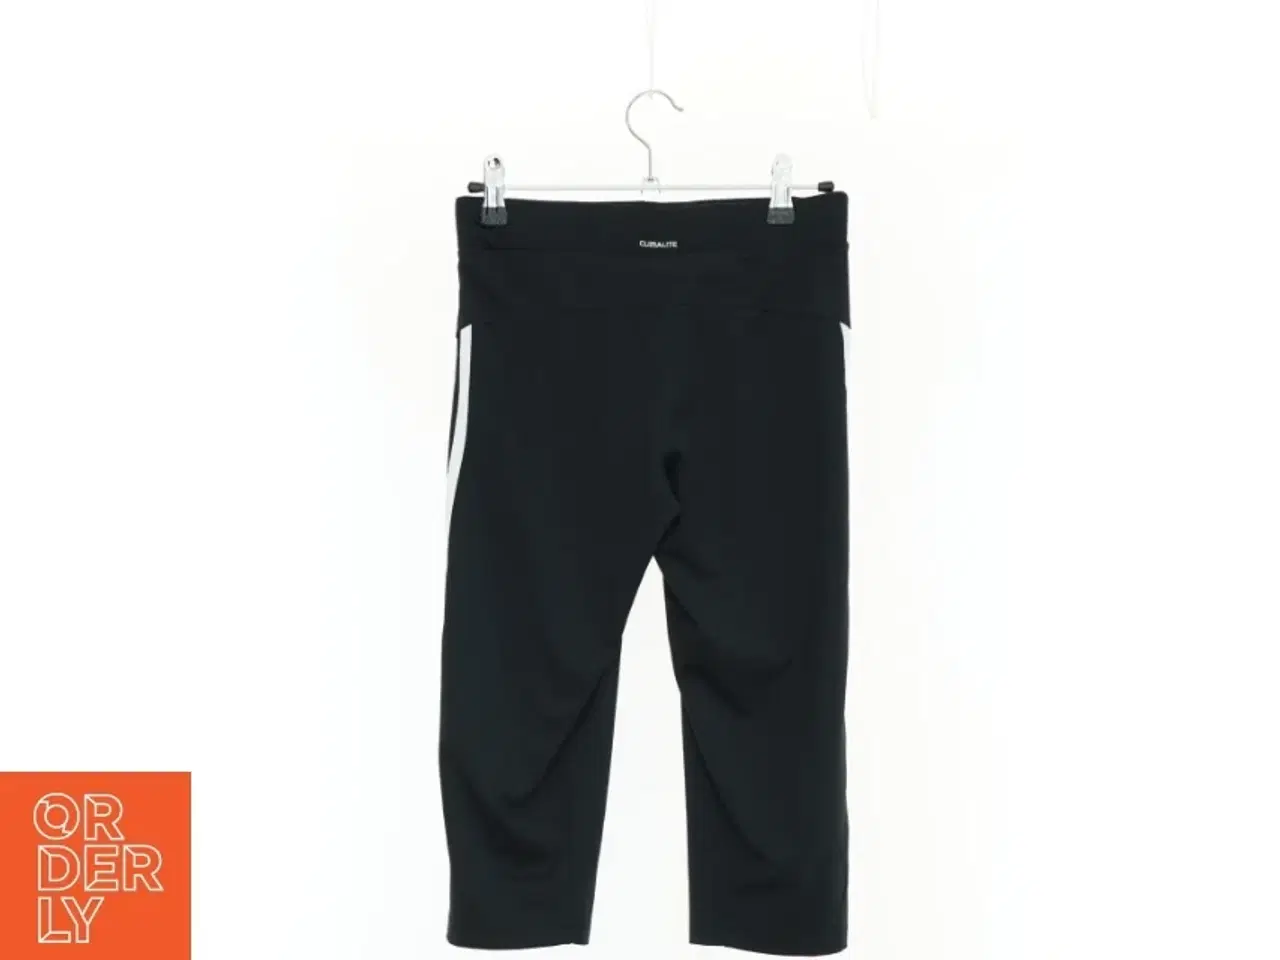 Billede 2 - Bukser fra Adidas (str. 164 cm)